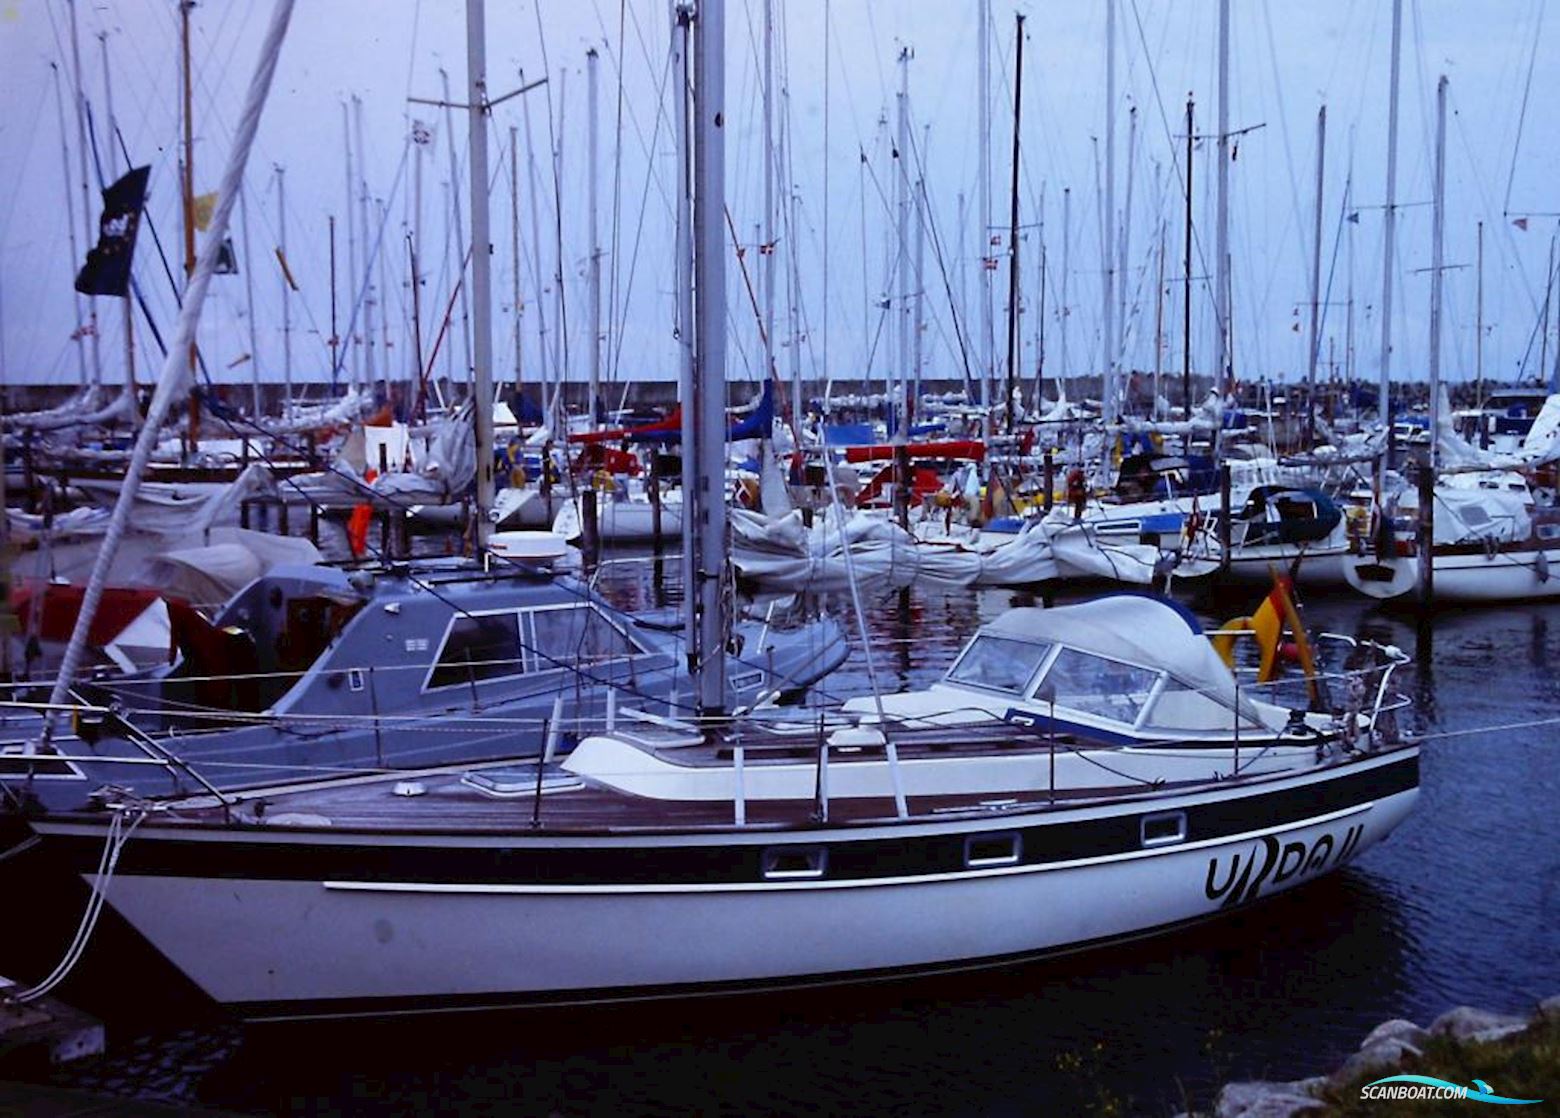 Hallberg-Rassy 312 -Verkauft- Segelboot 1986, mit Volvo Penta 2003 motor, Deutschland